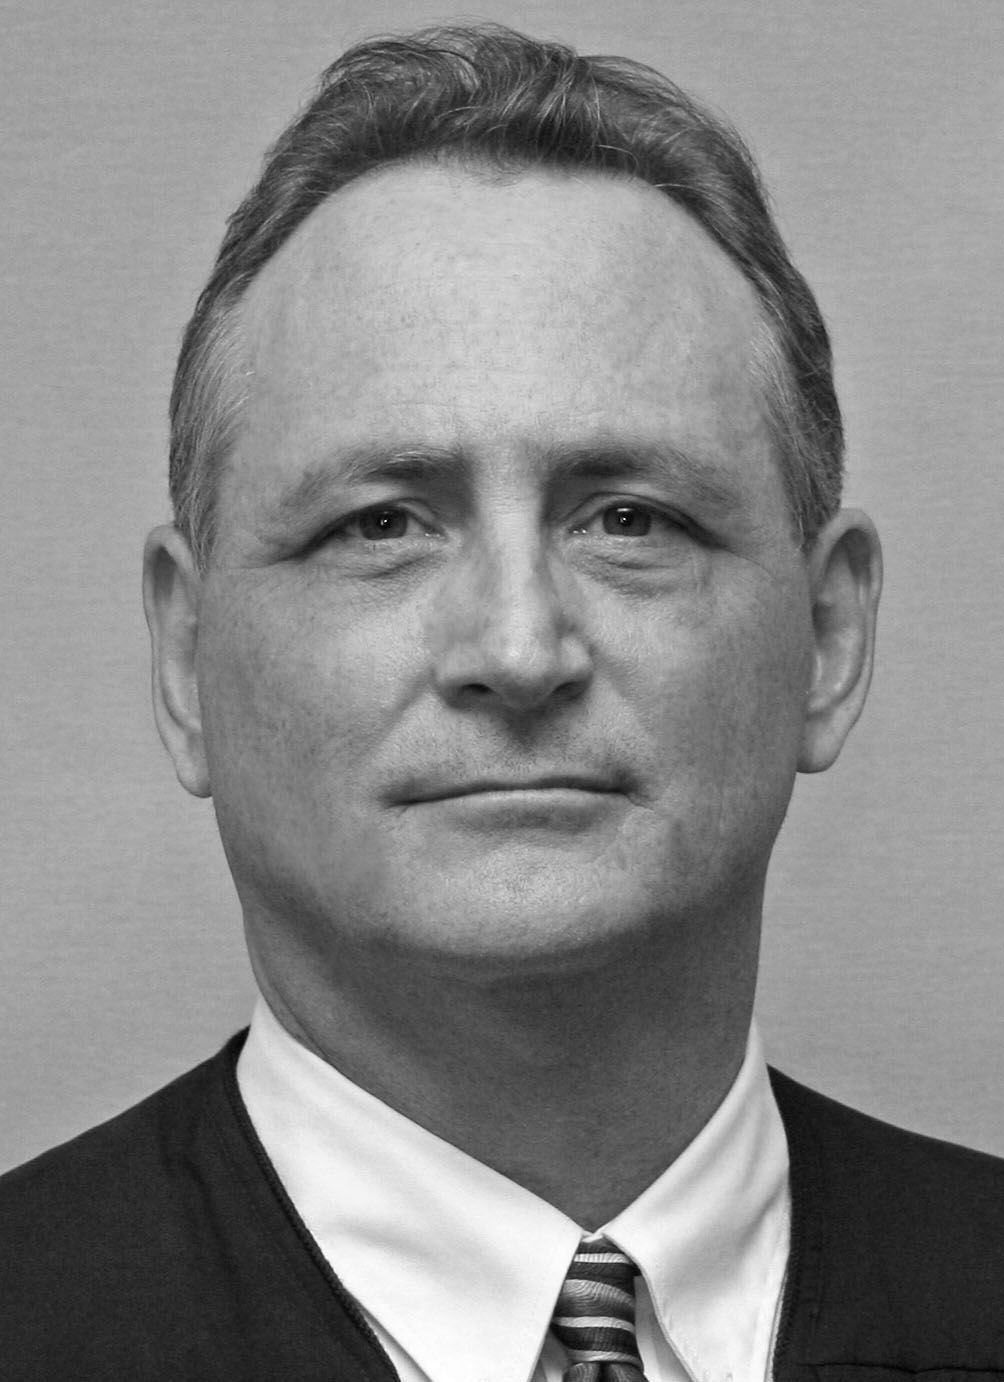 Juez Principal Robert E. Morin